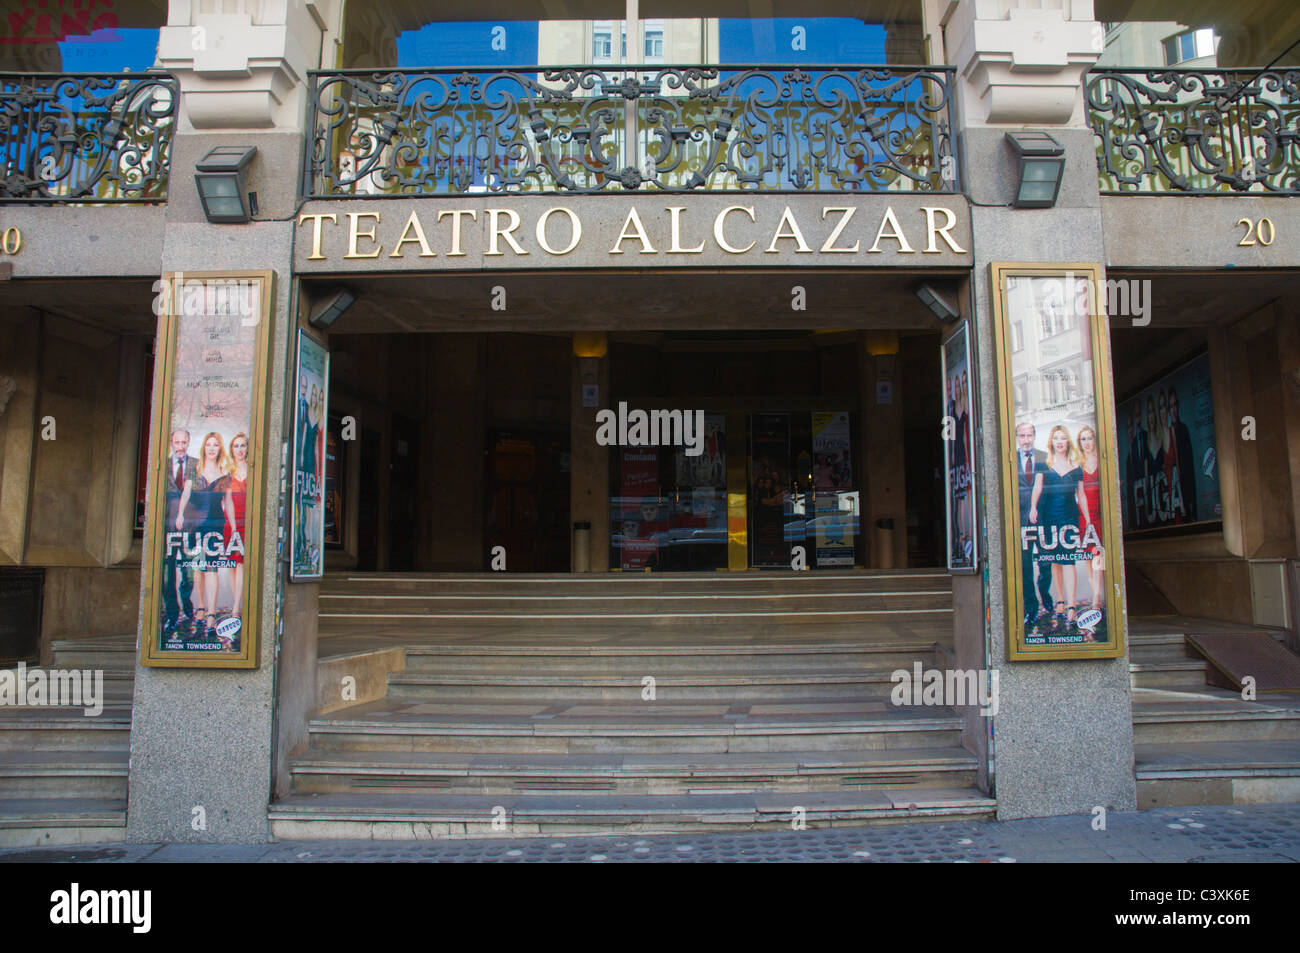 Teatro Alcazar extérieur théâtre calle de la rue Alcala Madrid Espagne Europe Banque D'Images